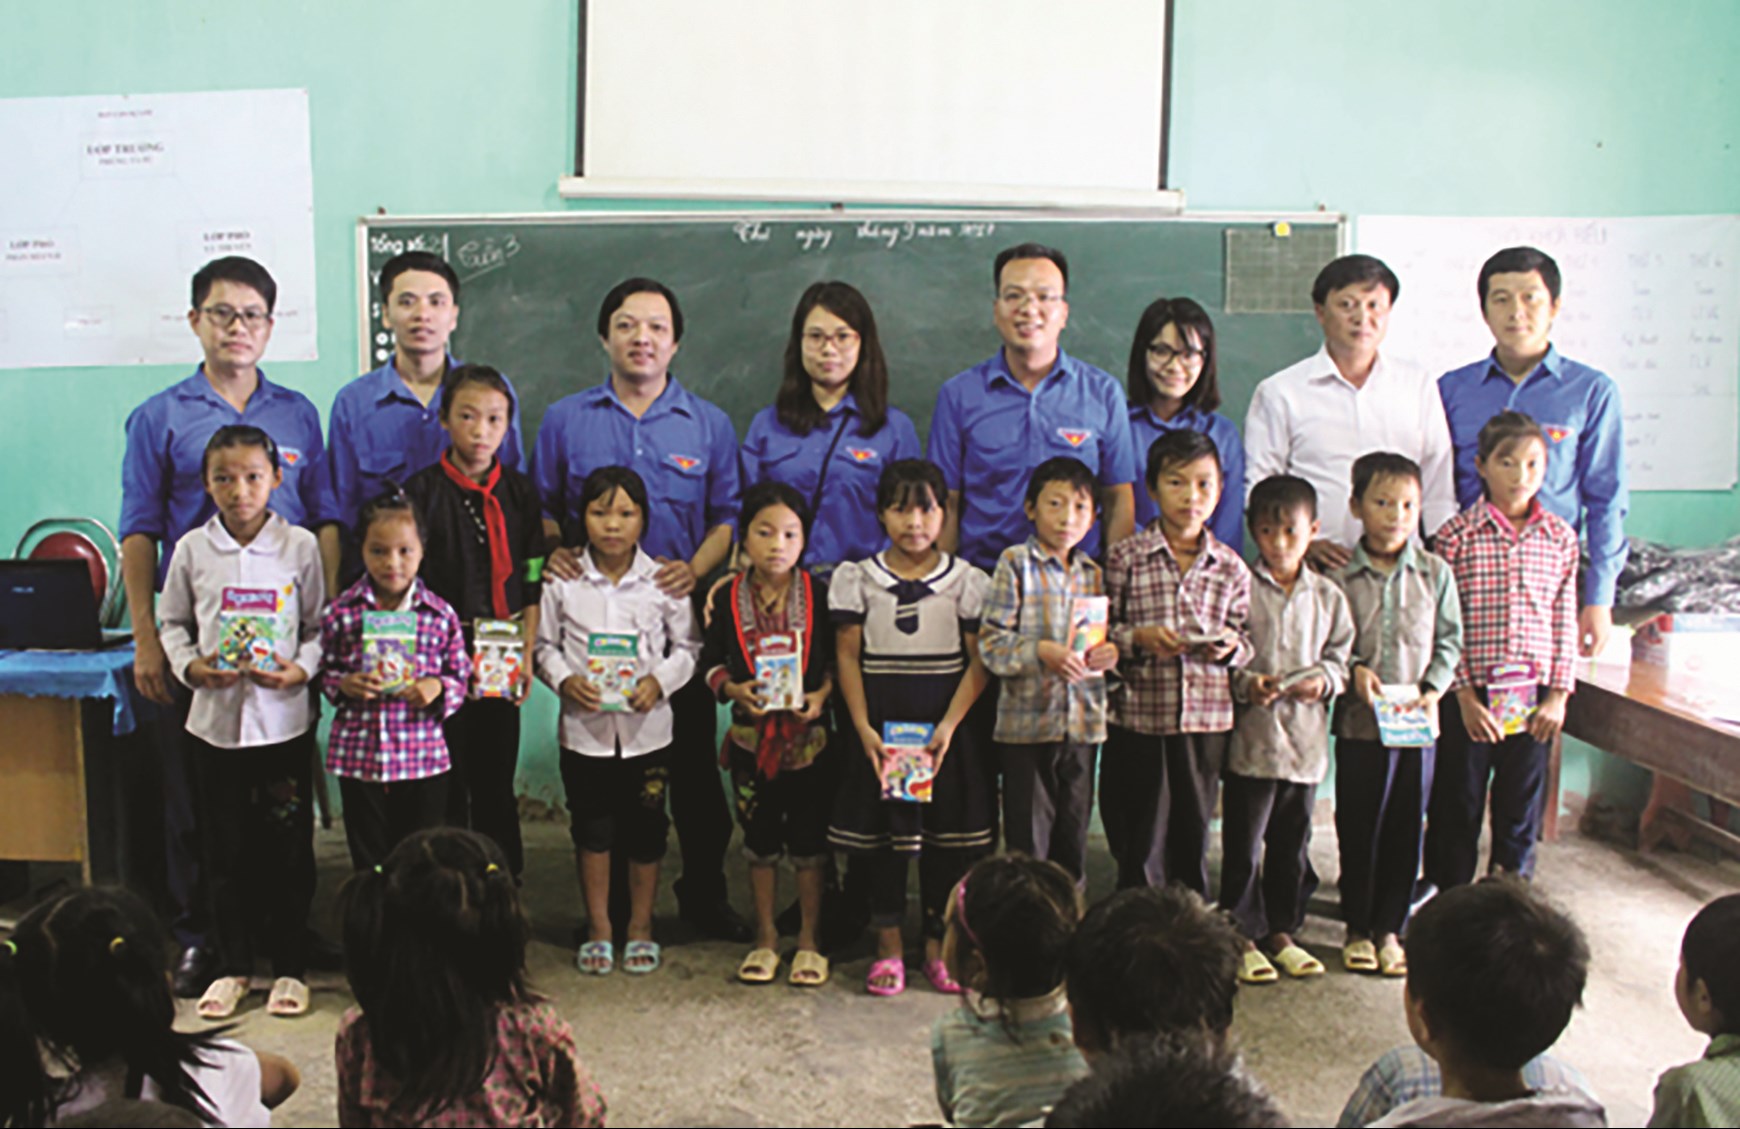 Chương trình “Tủ sách vùng cao” tại Trường Phổ thông Dân tộc bán trú Tiểu học Nậm Khòa, xã Nậm Khòa, huyện Hoàng Su Phì (Hà Giang).